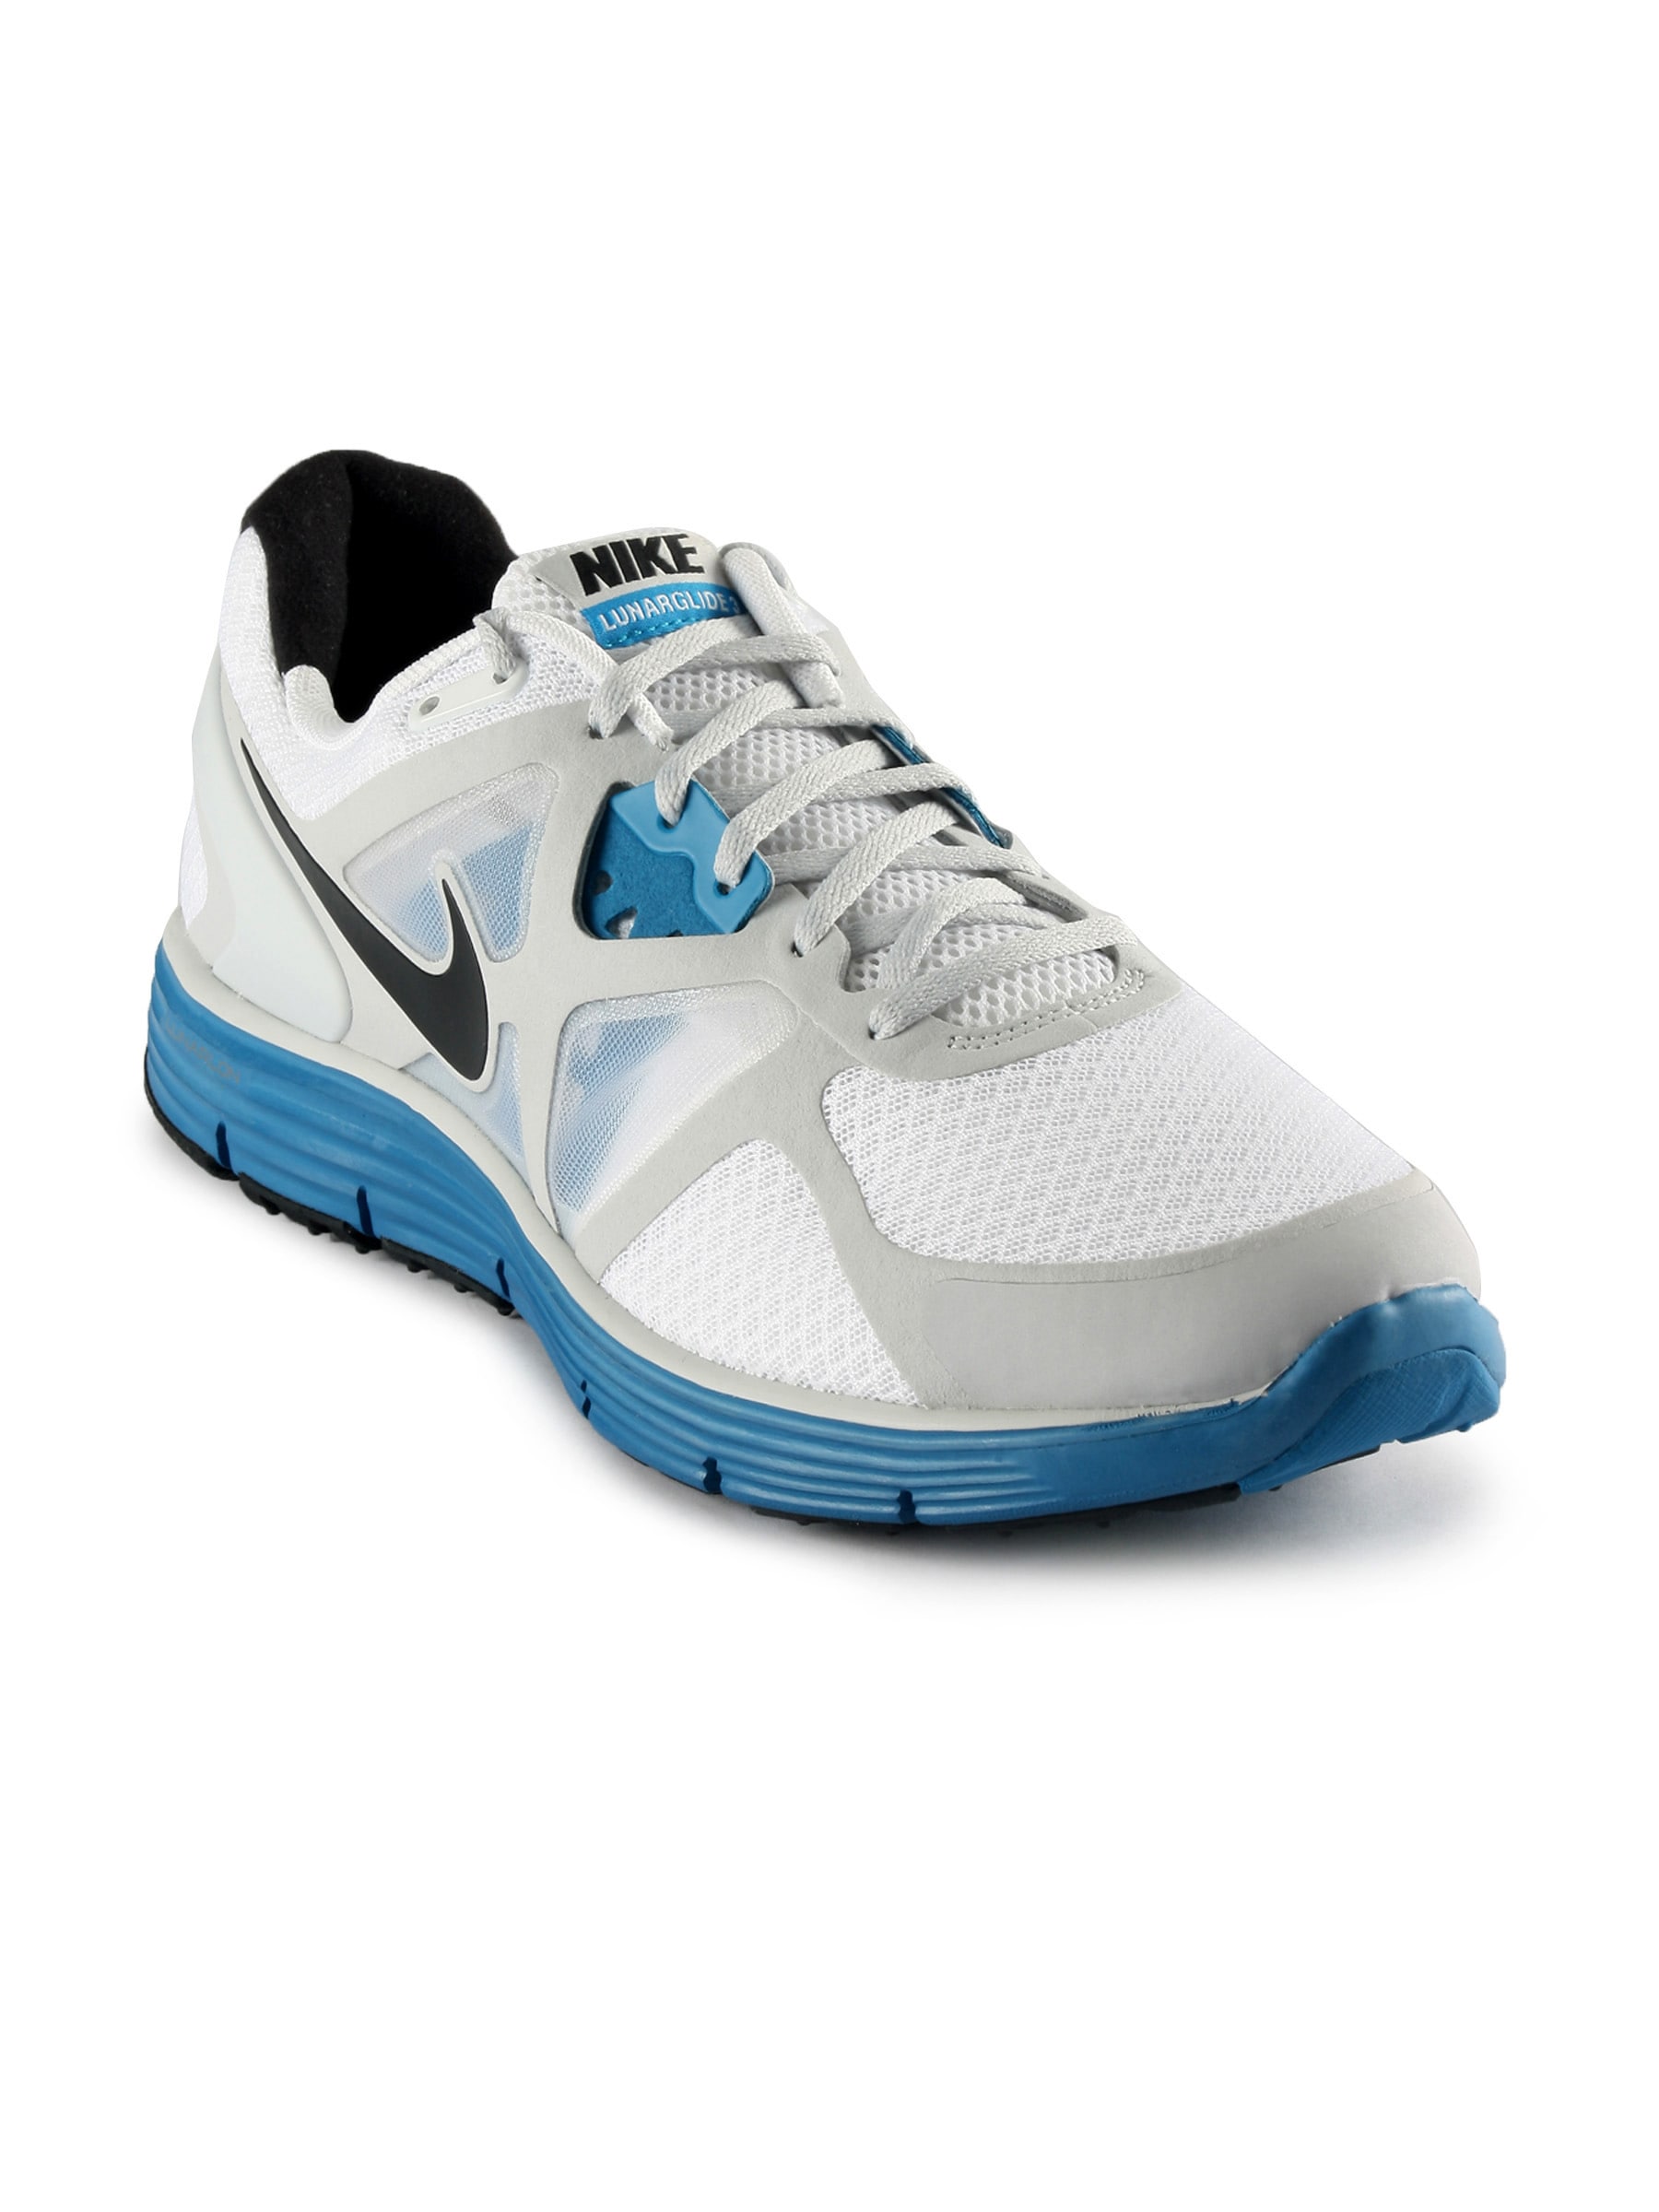 Nike Men Lunarglide+ 3 White Sports Shoe